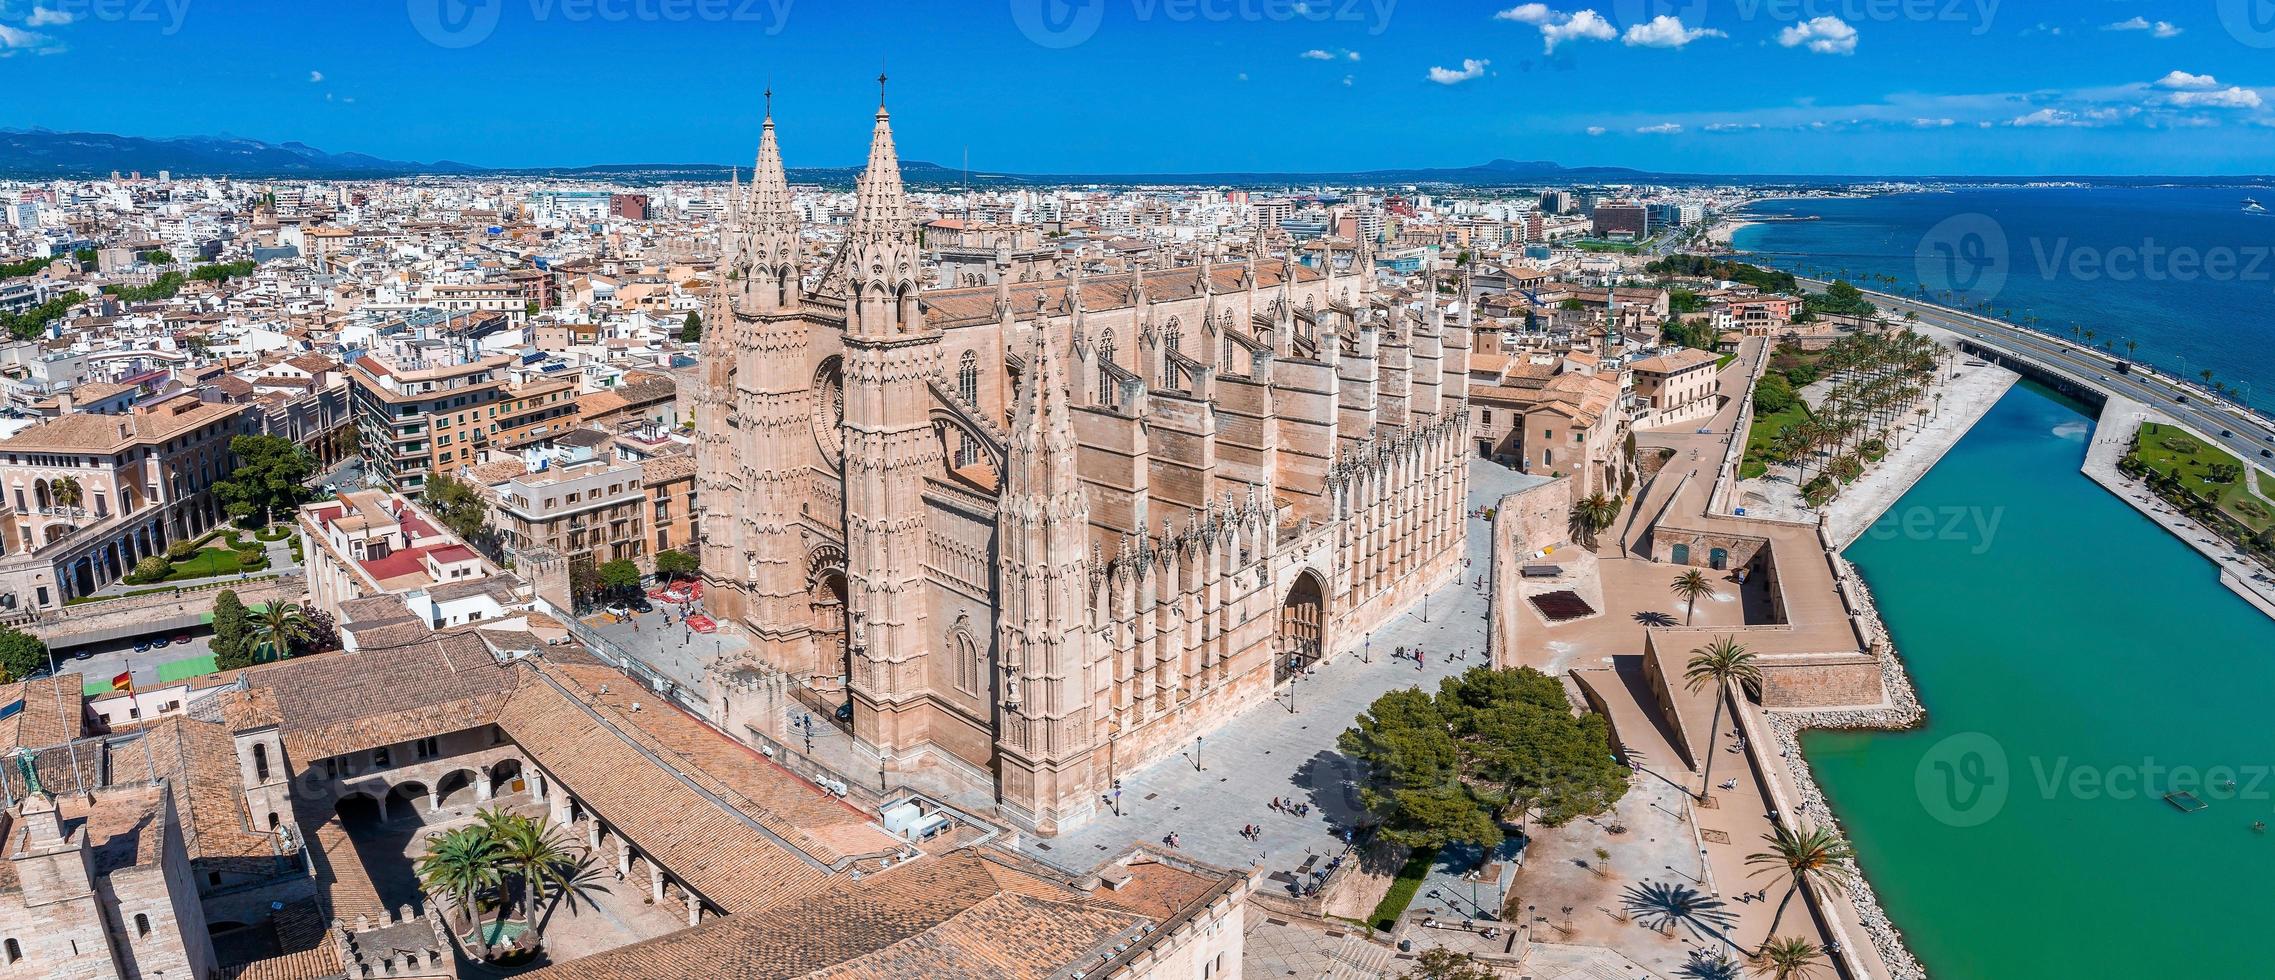 cattedrale gotica medievale di palma de mallorca in spagna foto